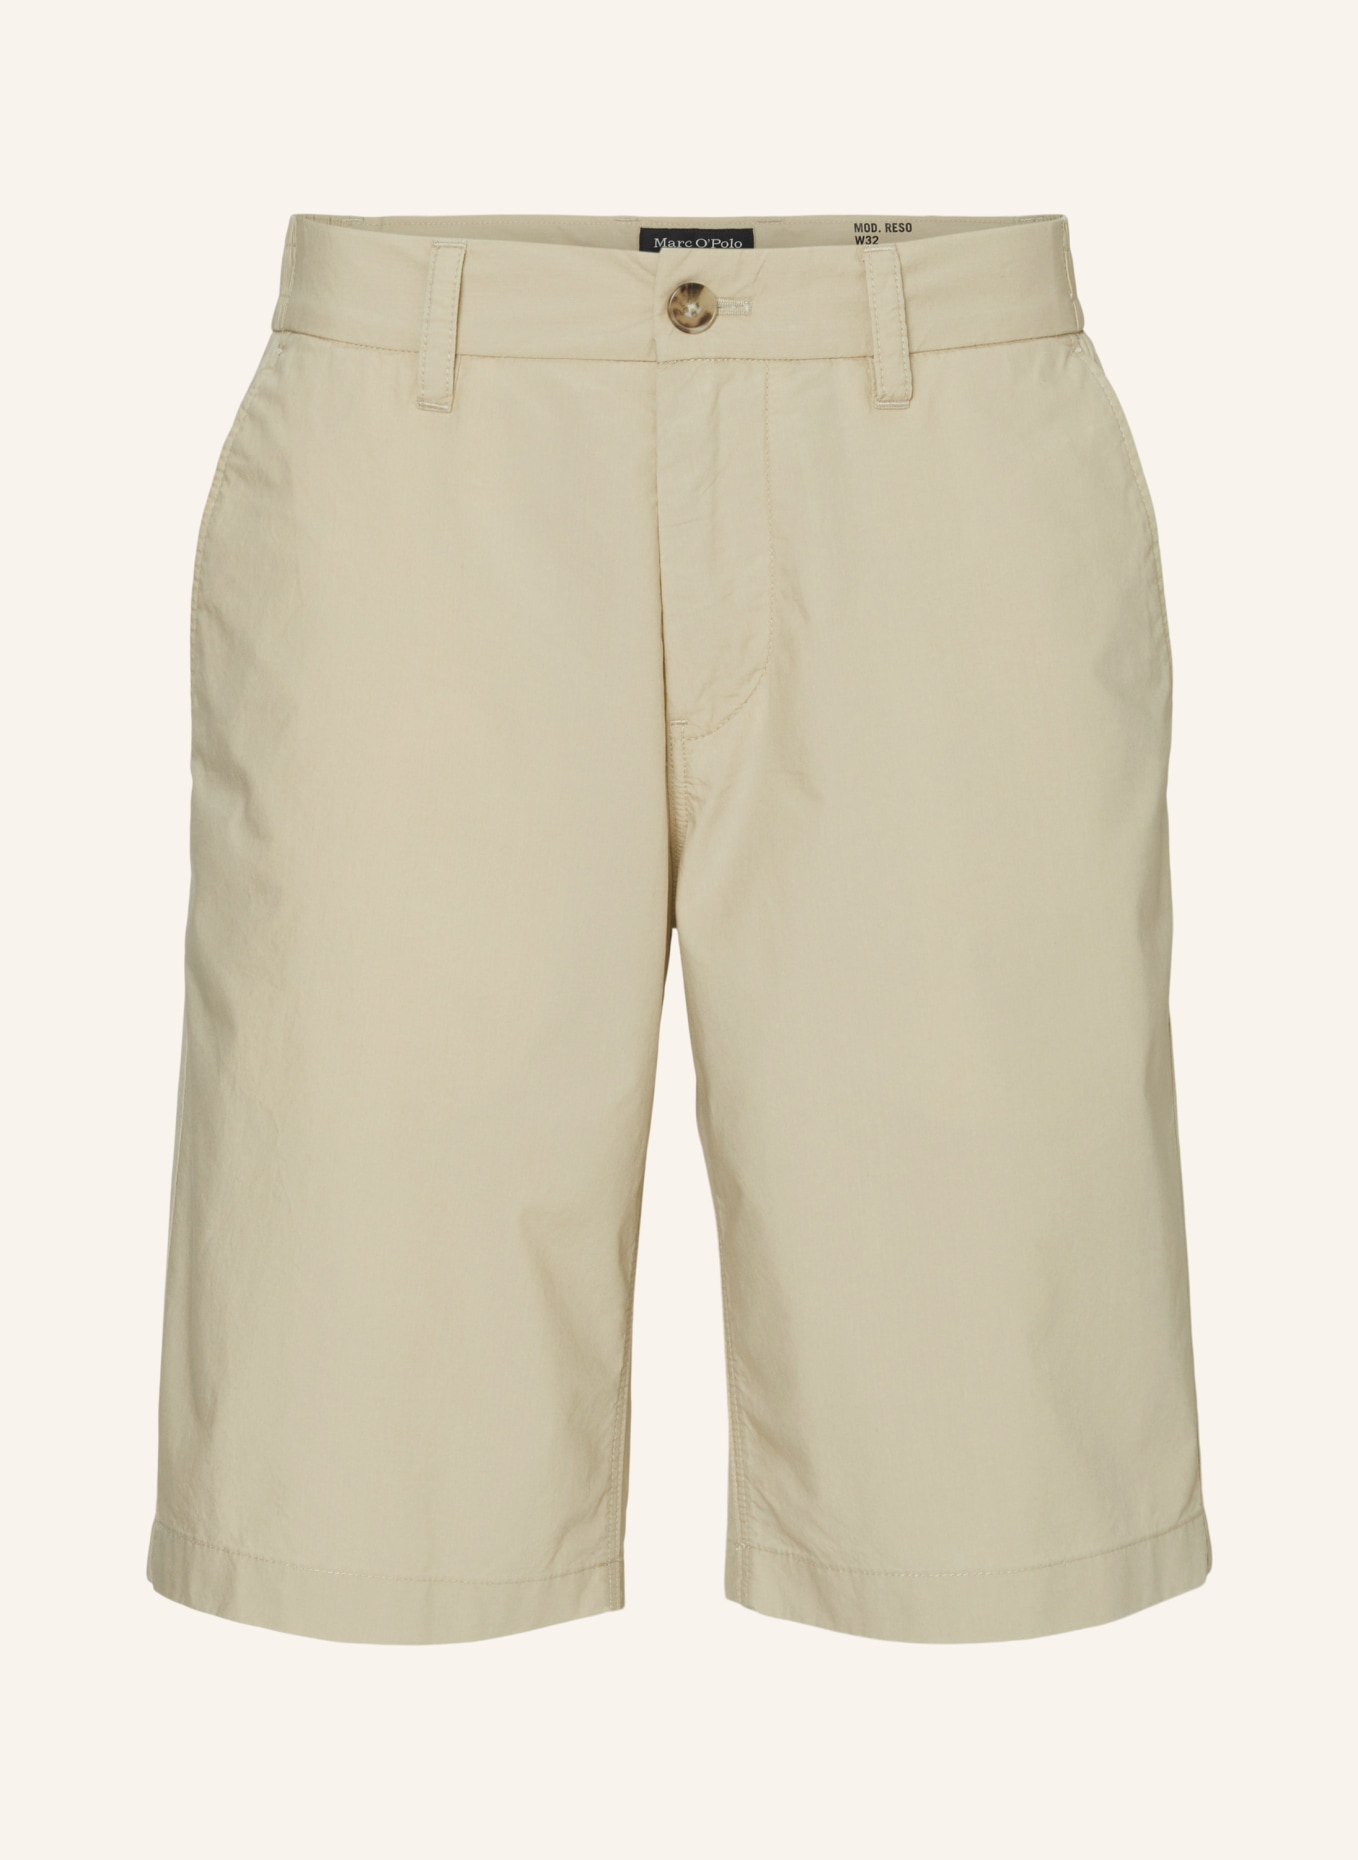 Marc O'Polo Shorts Modell RESO, Farbe: BEIGE (Bild 1)